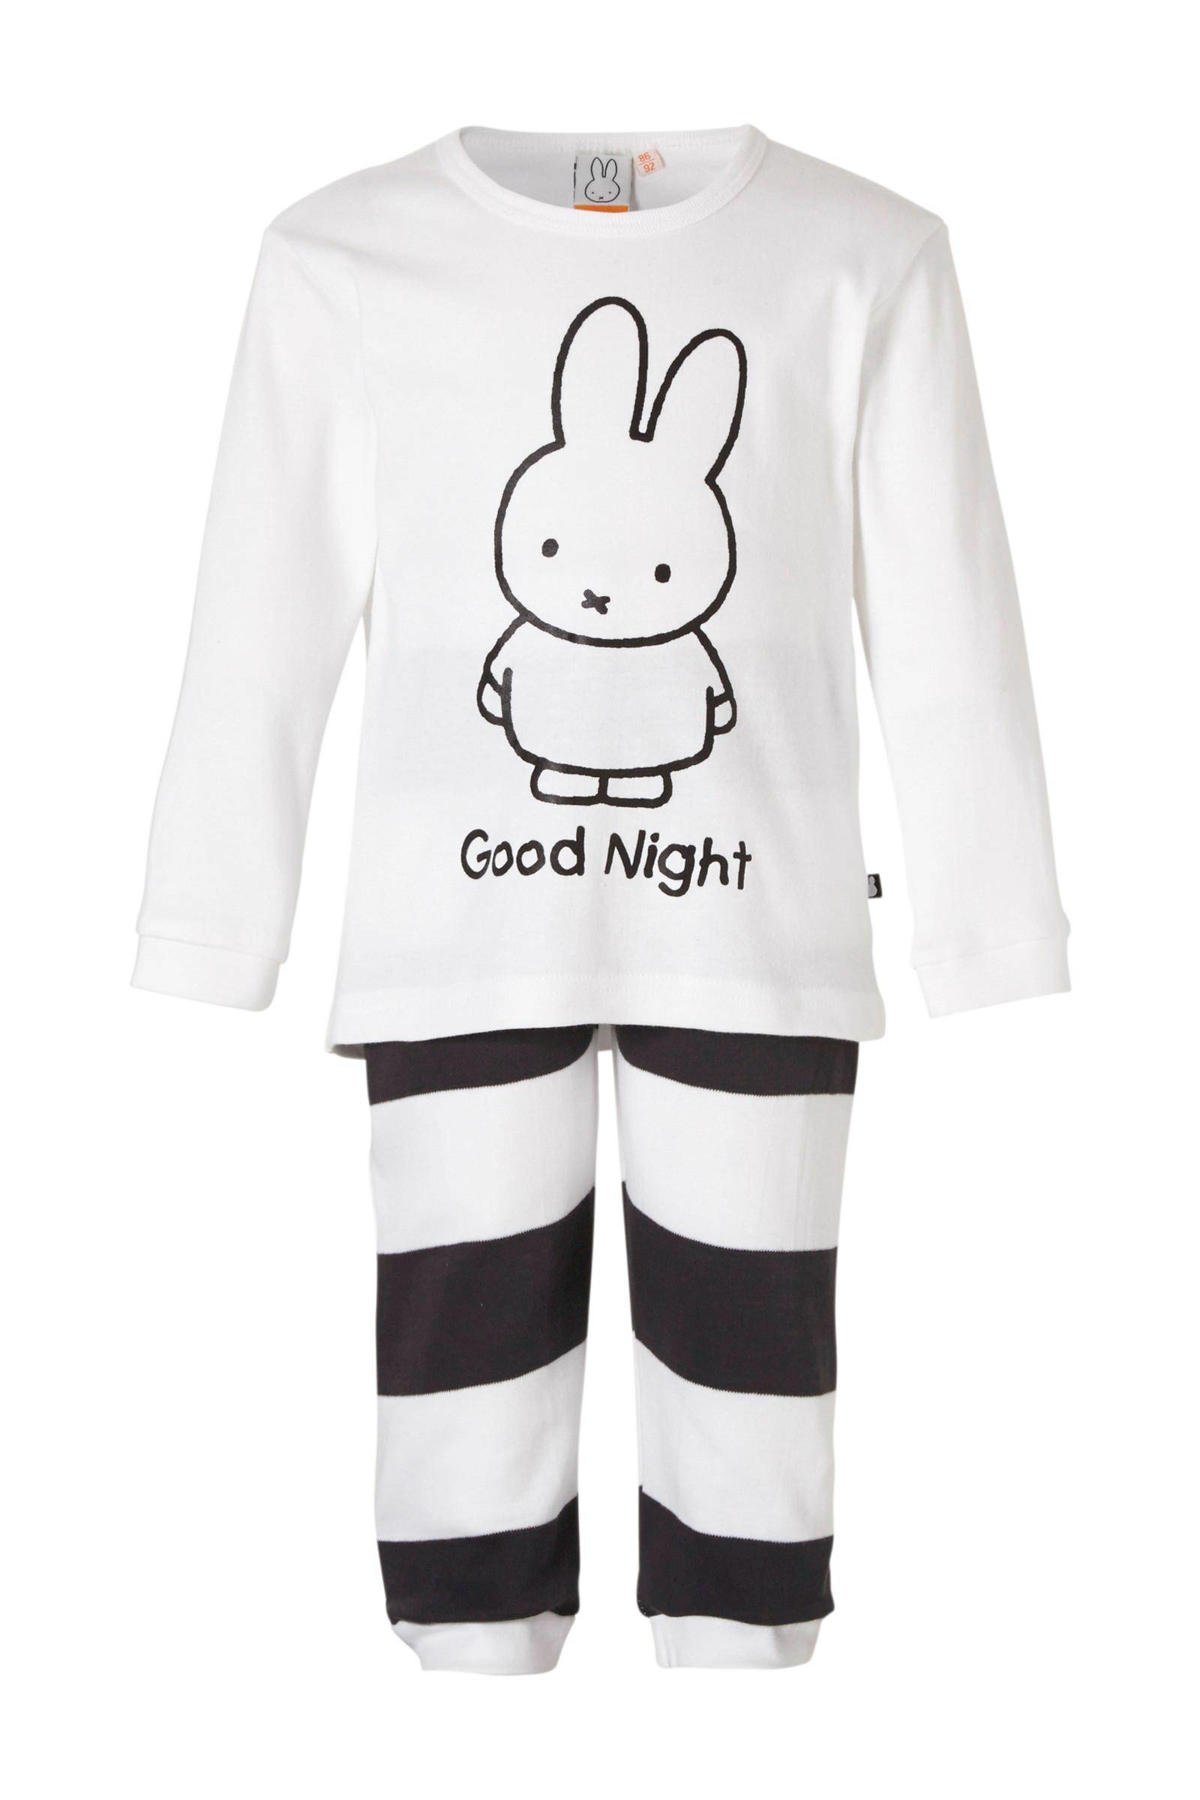 Reactor bellen Guinness nijntje baby pyjama | wehkamp